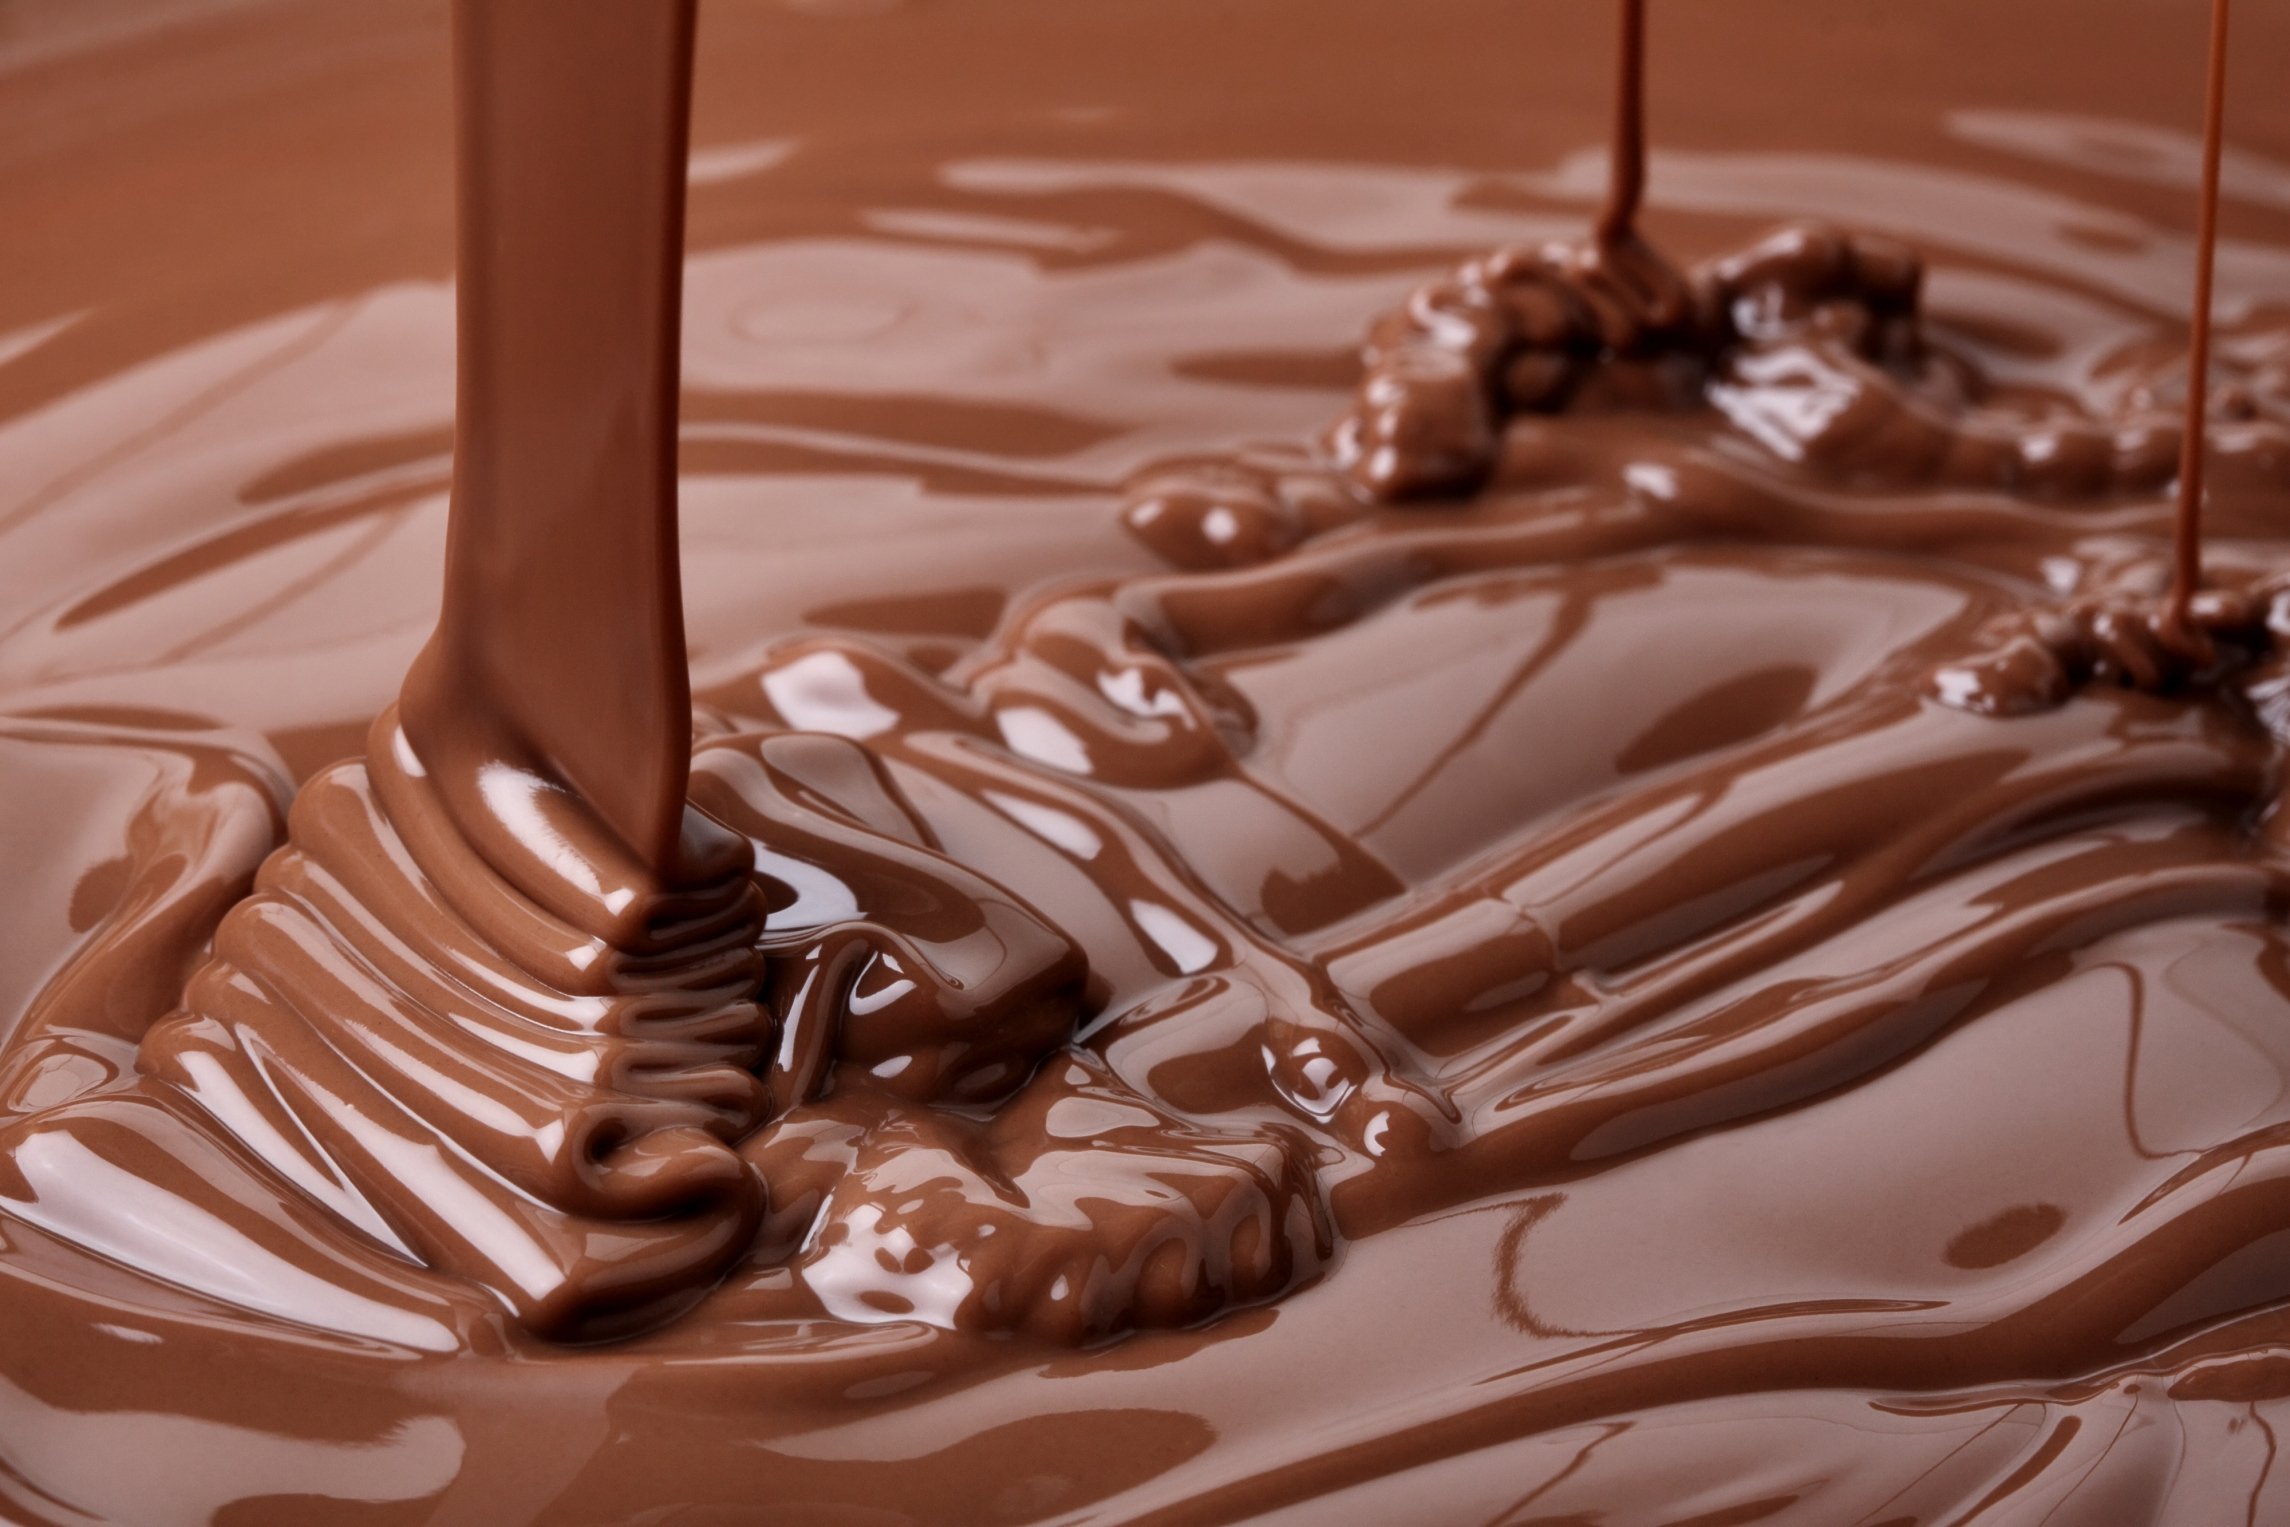 Ну шоколадом. Жидкий шоколад. Расплавленный шоколад. Топленый шоколад. Тающий шоколад.